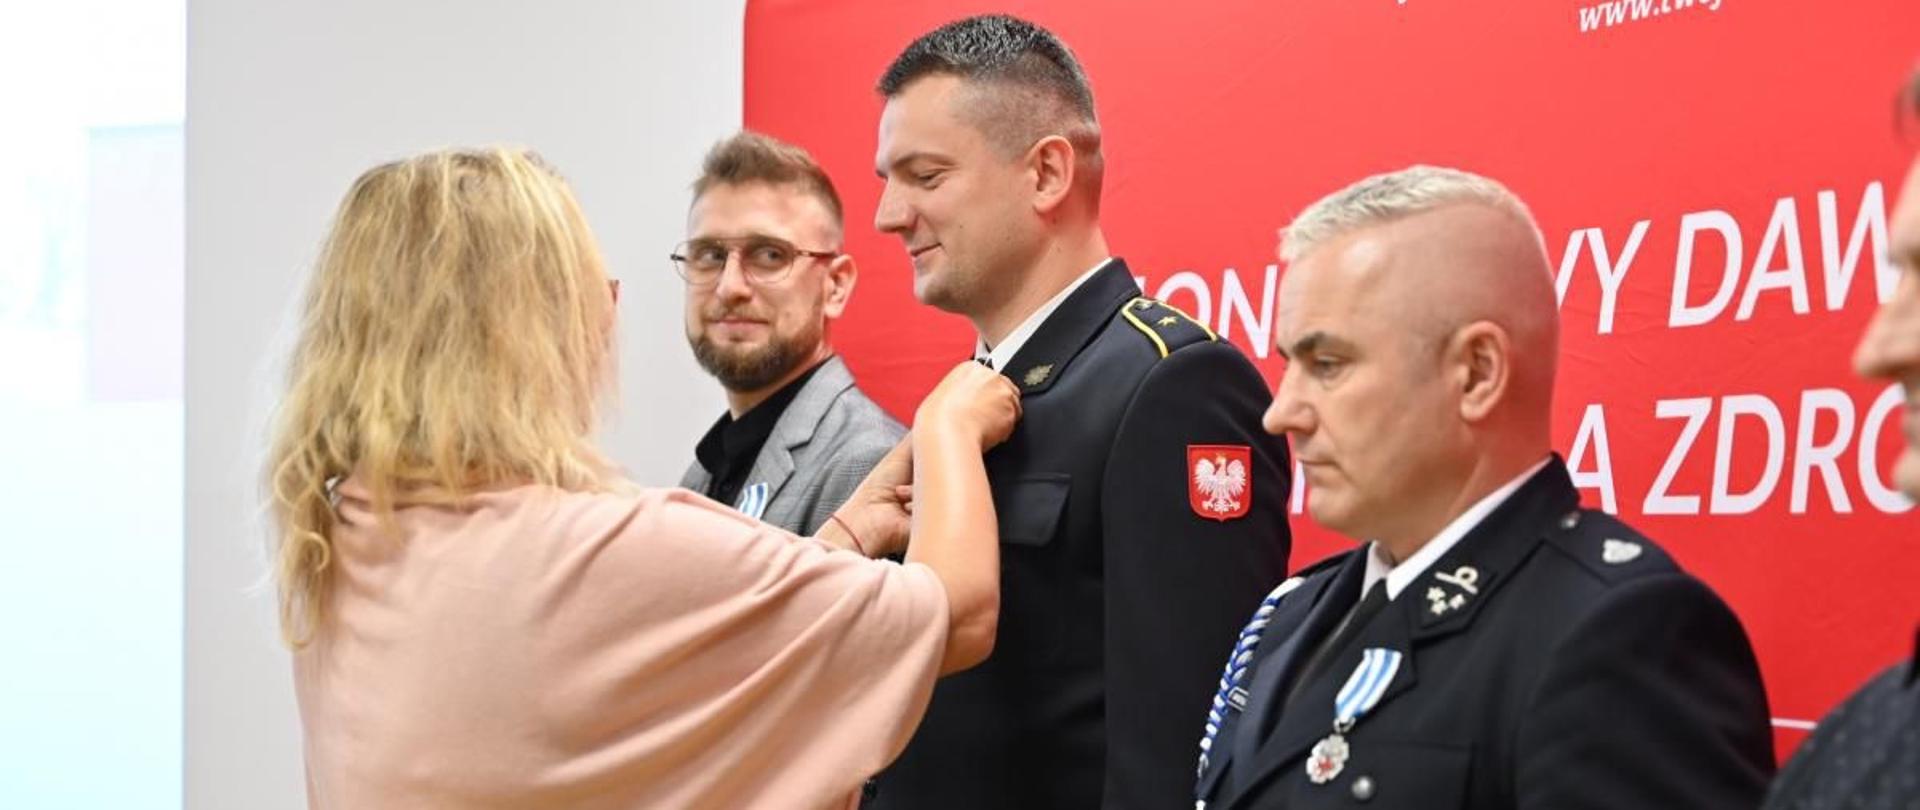 Odznaczony strażak w mundurze w trakcie przypinania medalu do munduru przez Dyrektor RCK w Gdańsku